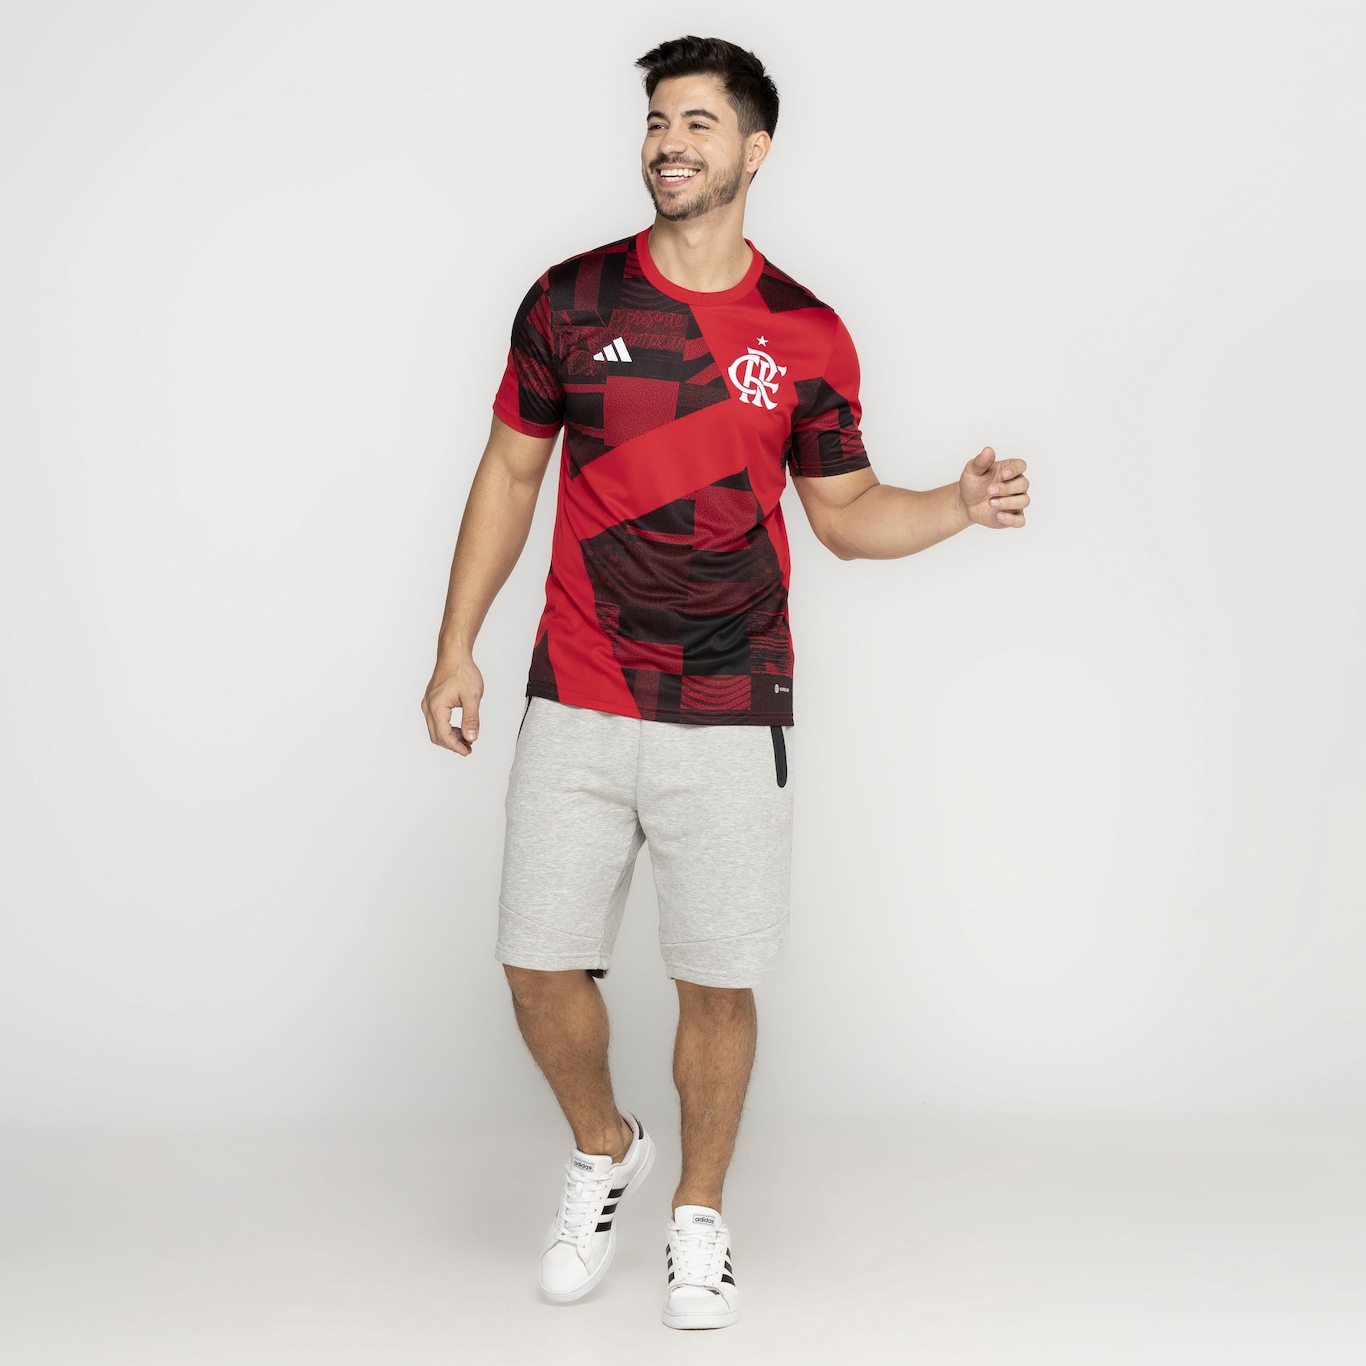 Camisa Pré-Jogo do Flamengo 23 adidas - Masculina - Foto 4